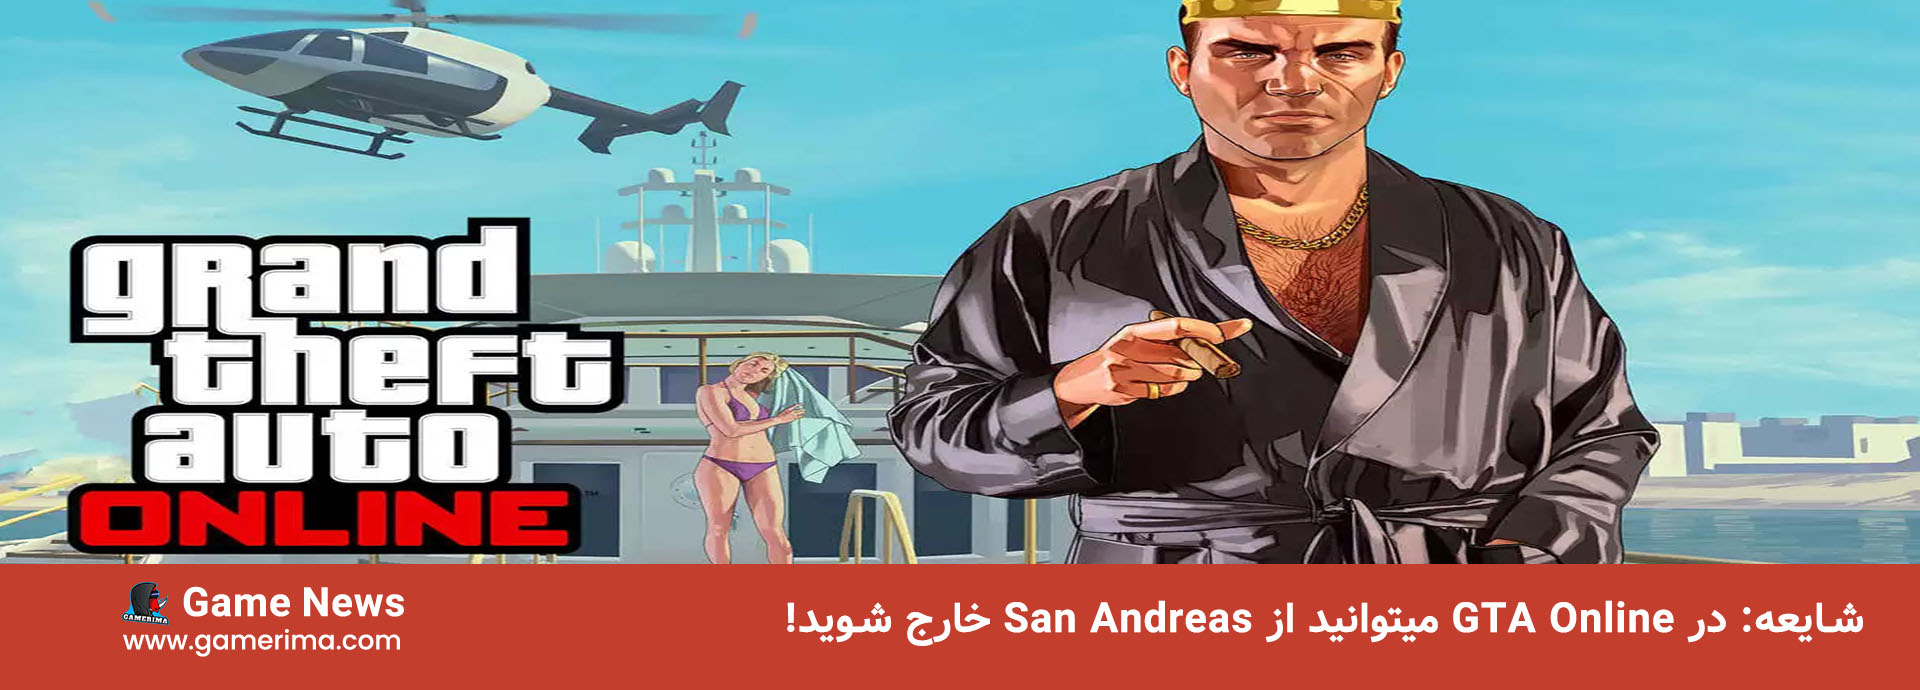 شایعه: در GTA Online میتوانید از San Andreas خارج شوید!